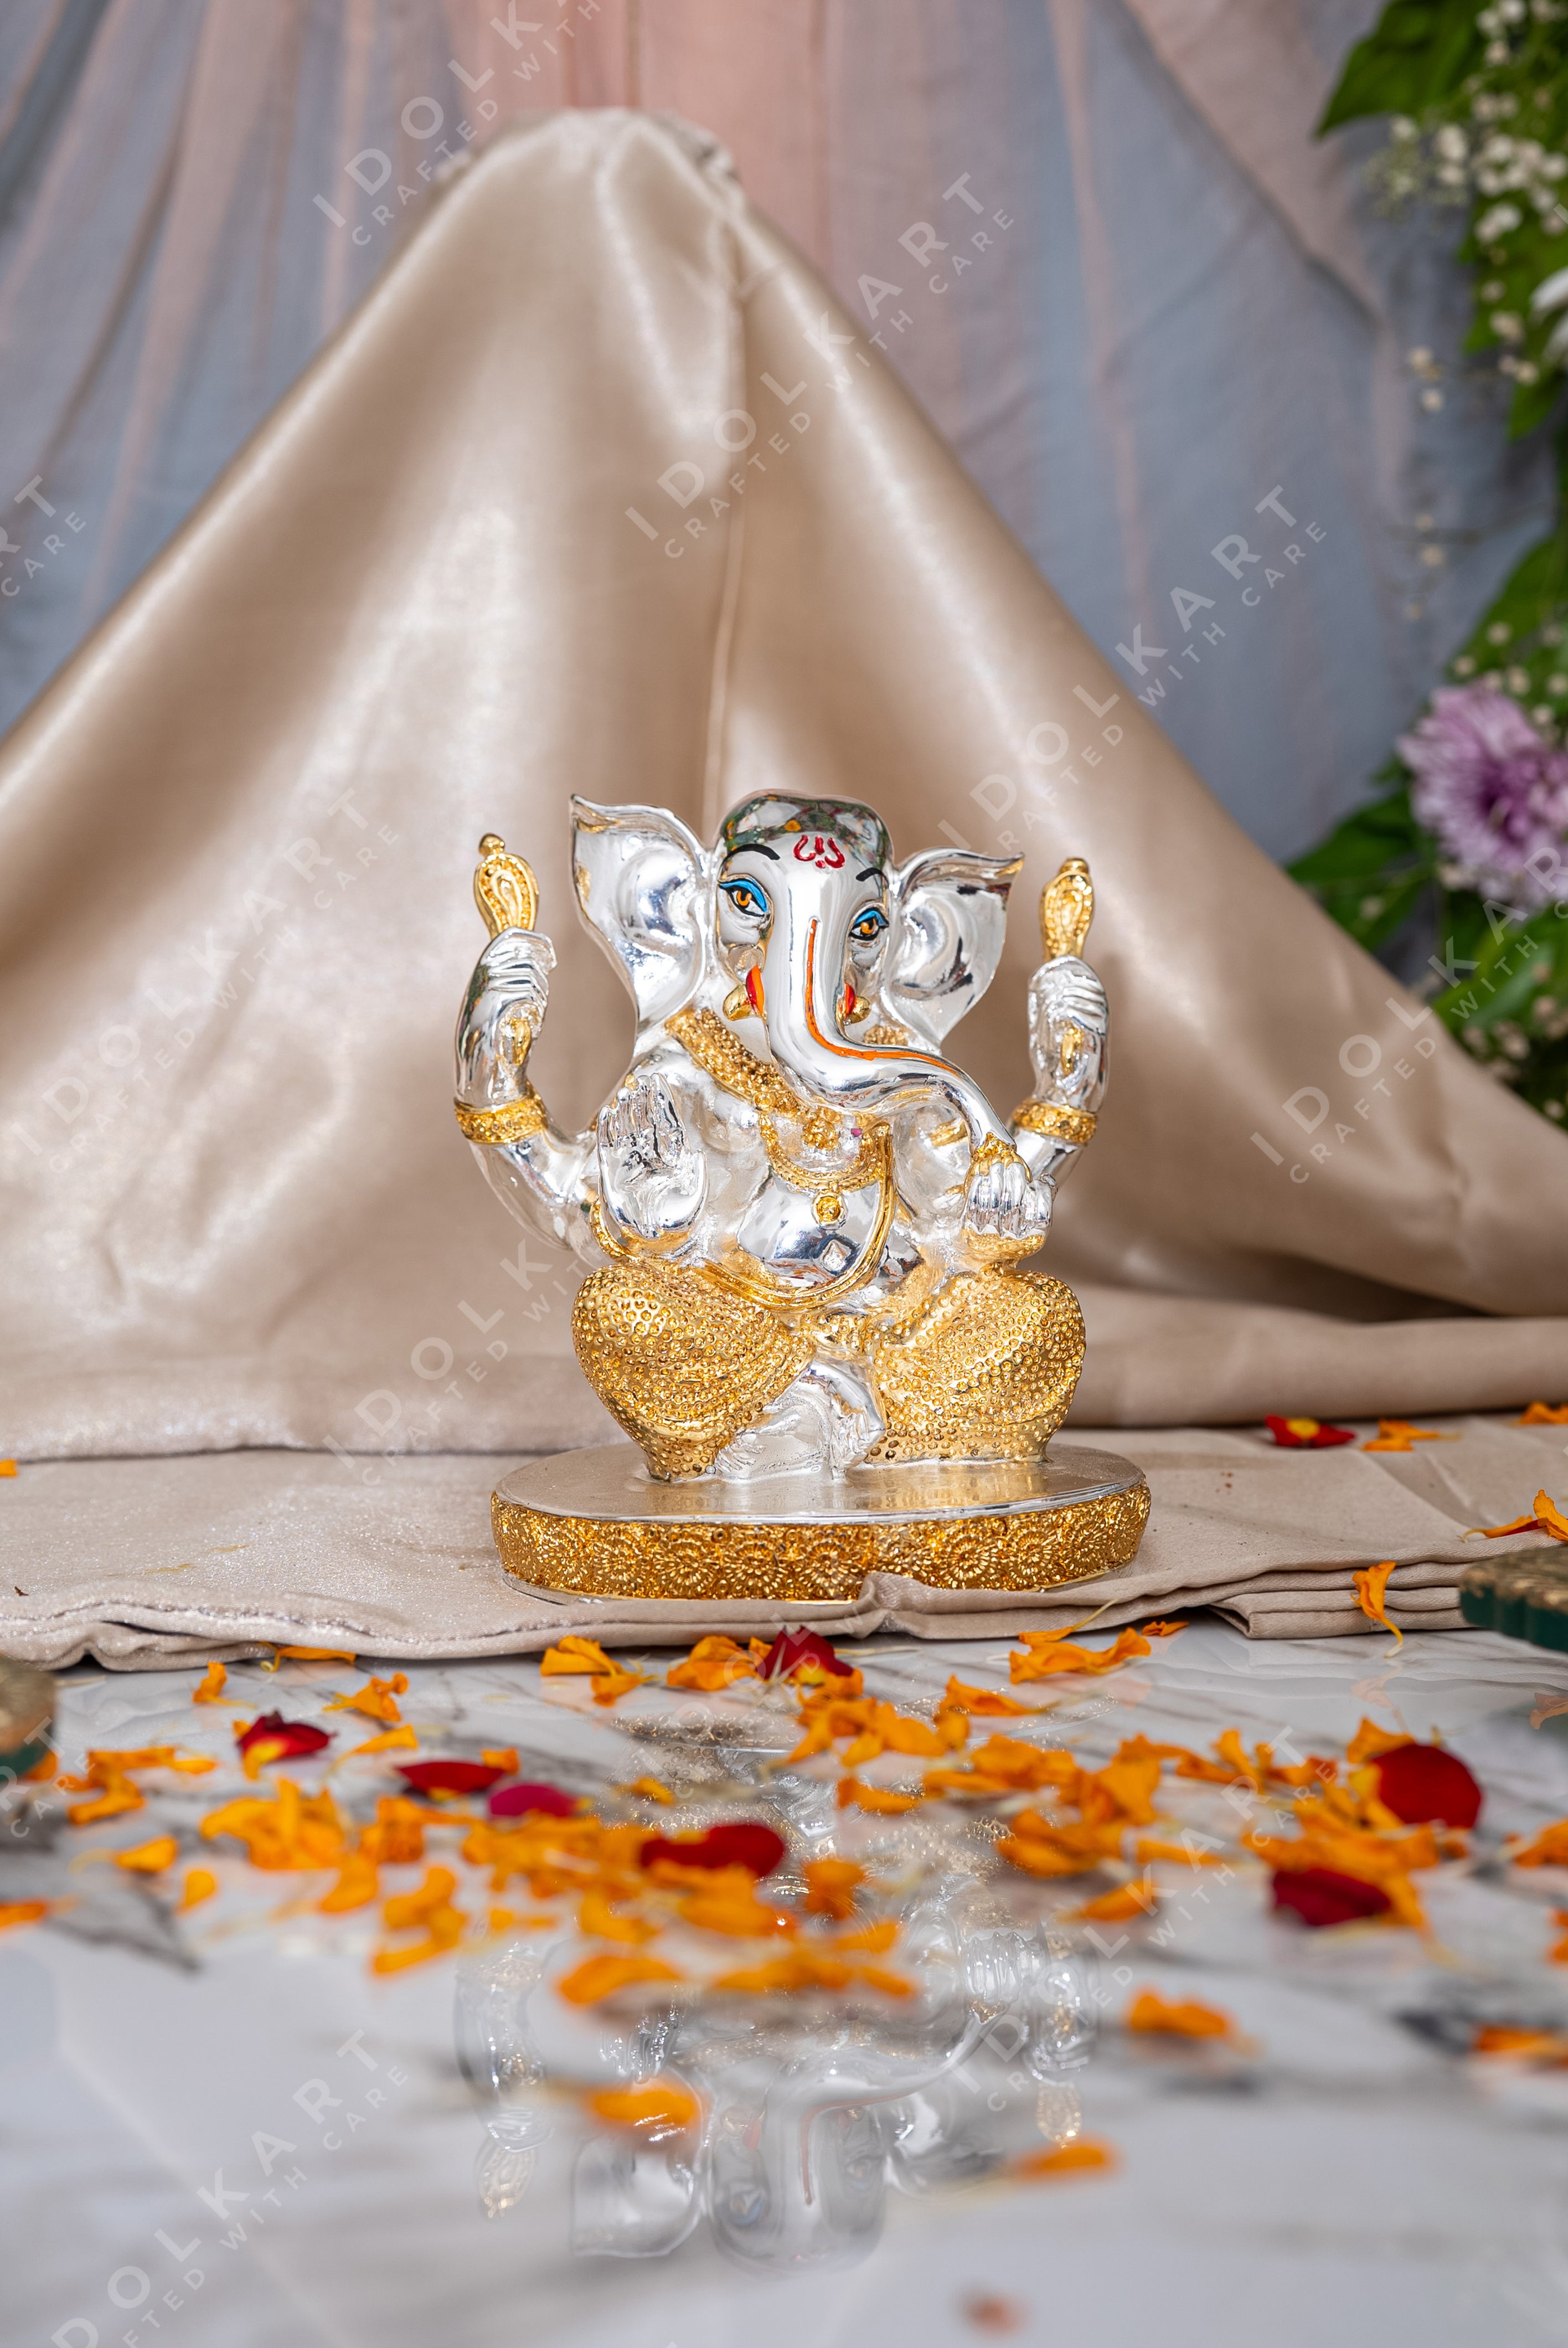 Buddhividhata Ganesha idol - Gold & Silver Coated